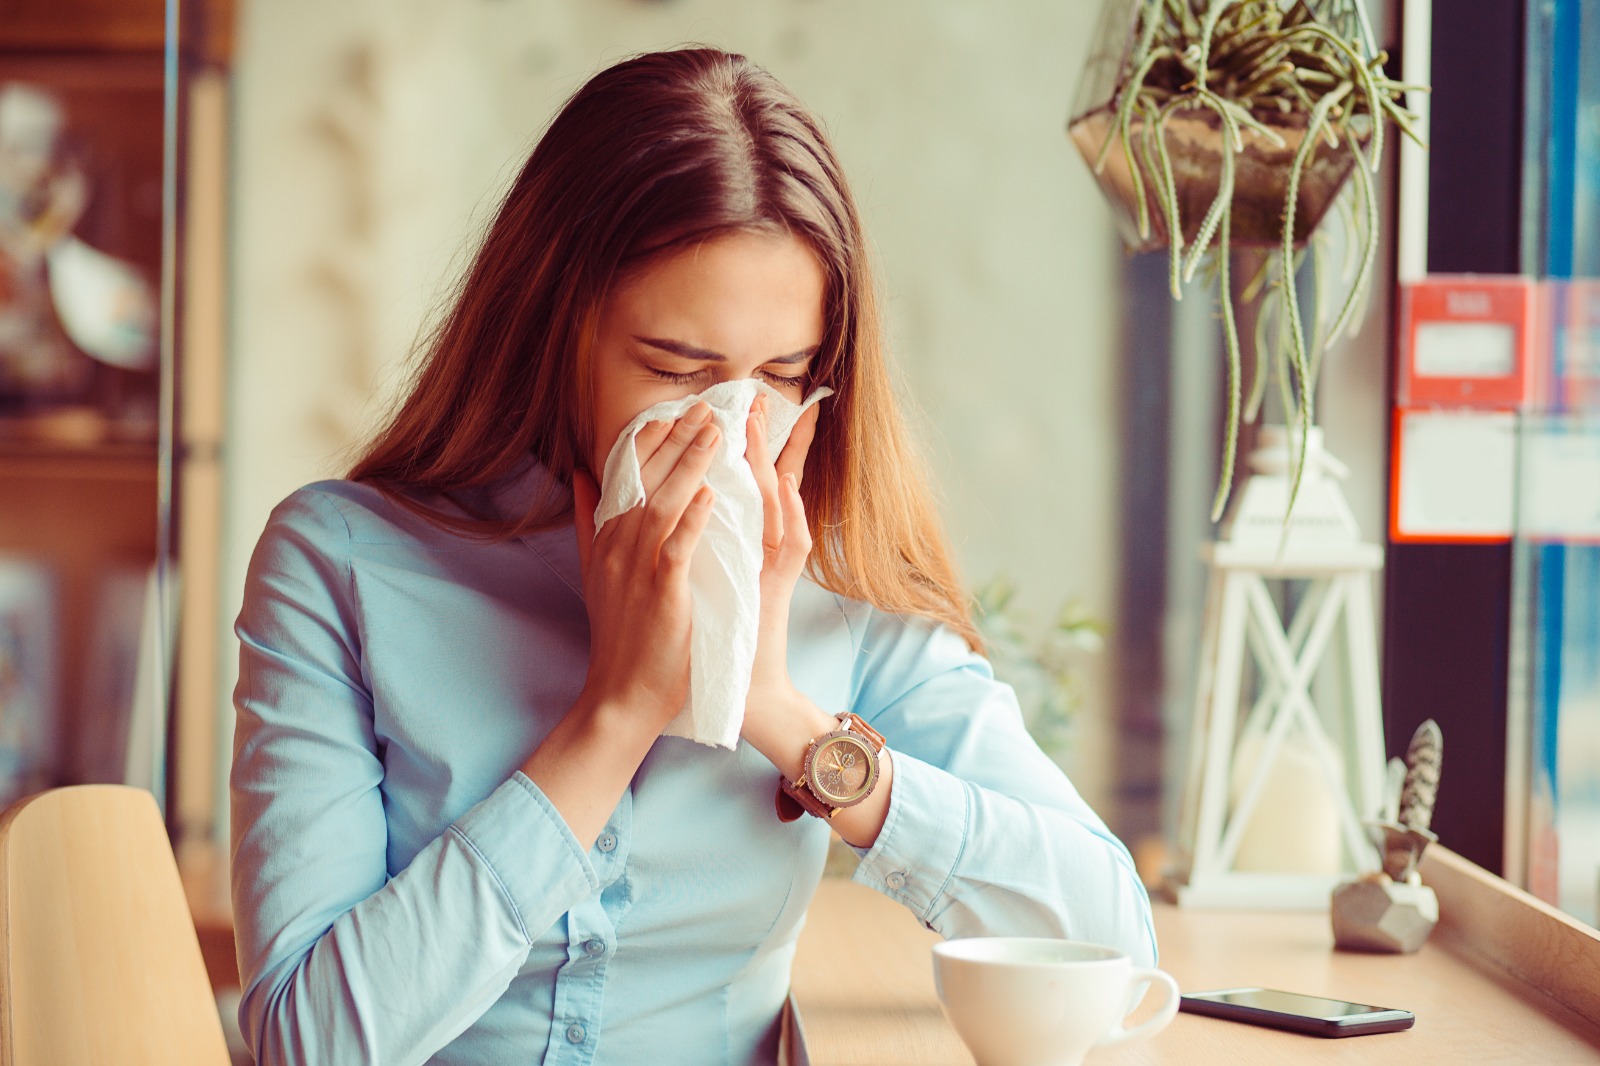 Los estornudos constantes y repetitivos son síntoma de una alergia respiratoria. (Foto Prensa Libre: Shutterstock).